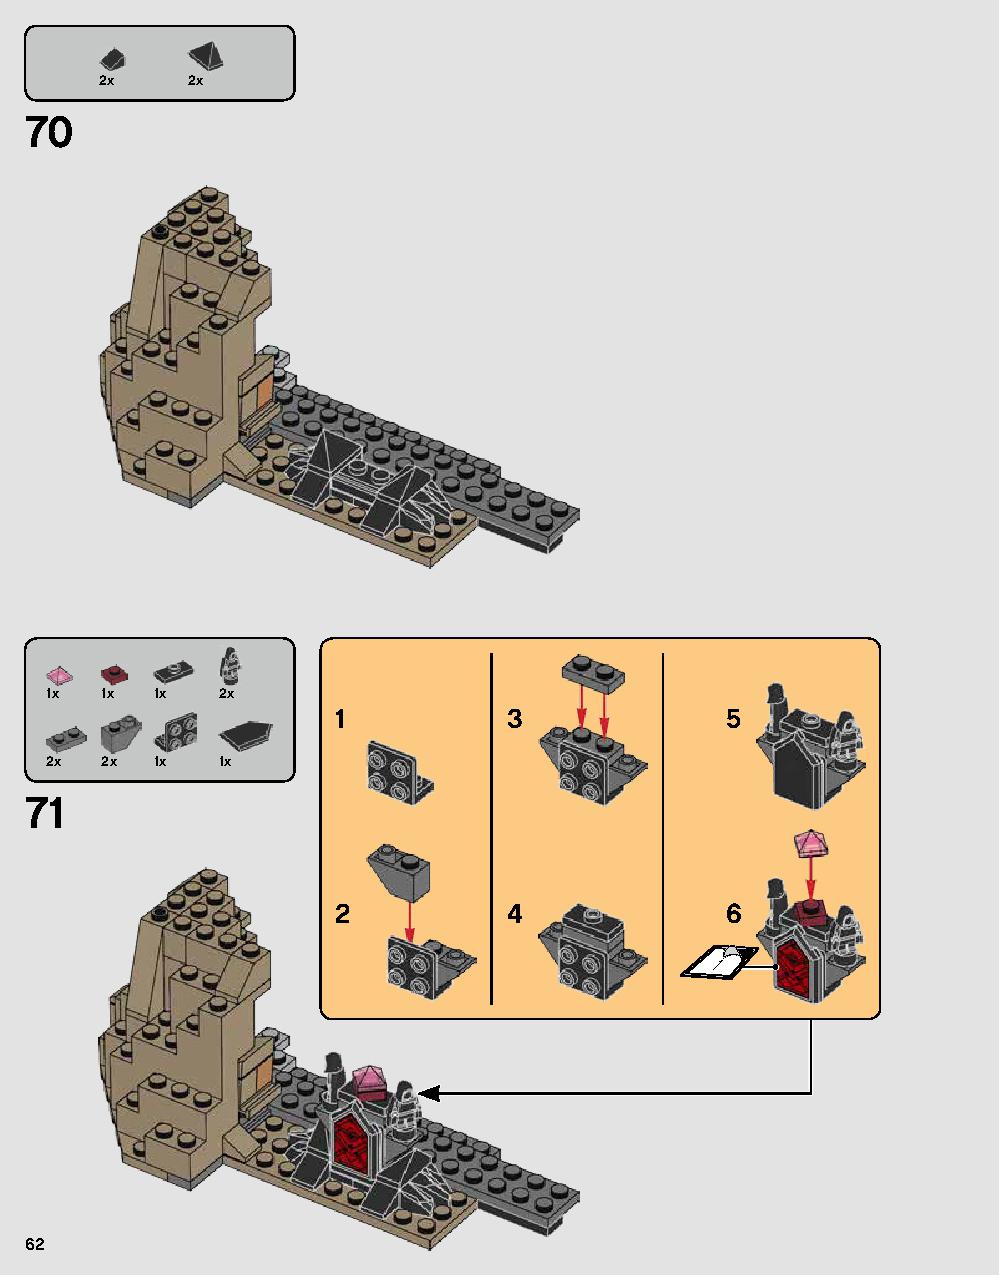 ダース・ベイダーの城 75251 レゴの商品情報 レゴの説明書・組立方法 62 page